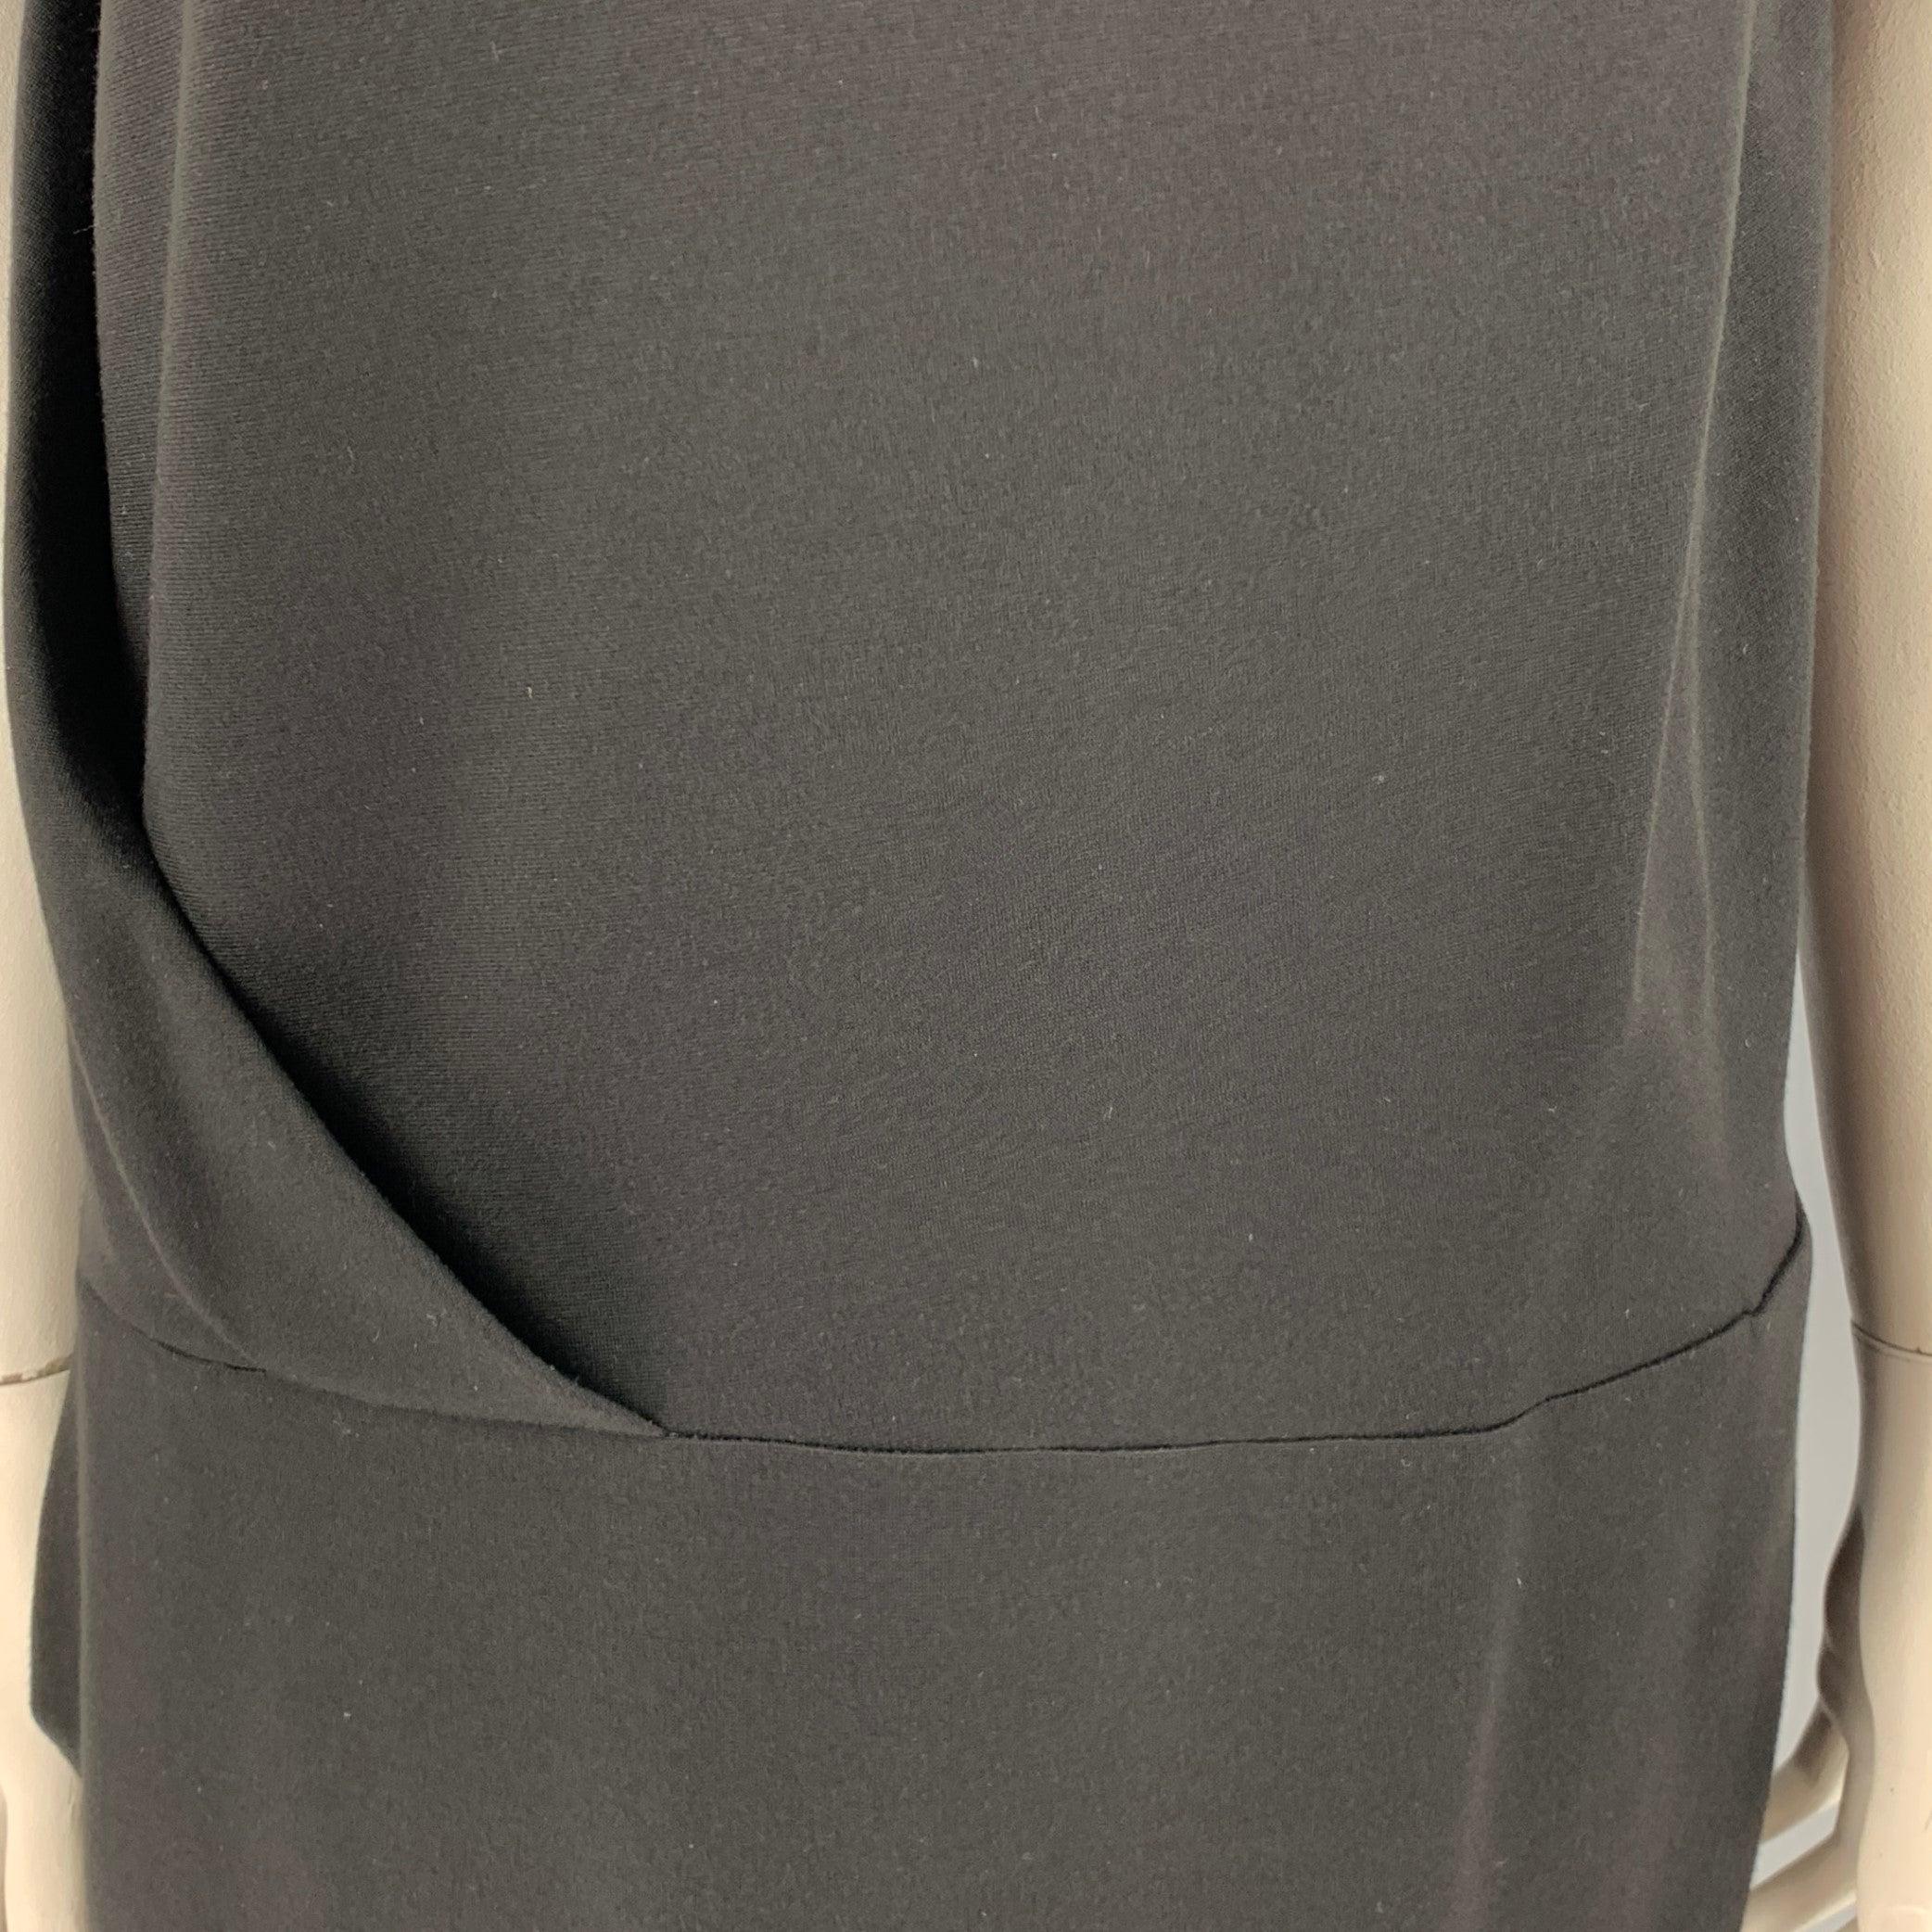 Robe CACHAREL
en nylon mélangé noir, sans manches, avec des détails de drapé et de Foldes, taille basse, deux poches et fermeture à glissière sur le côté.Très bon état d'occasion.
Marque à l'ourlet. 

Marqué :   IT 48 

Mesures : 
 
Épaule : 18